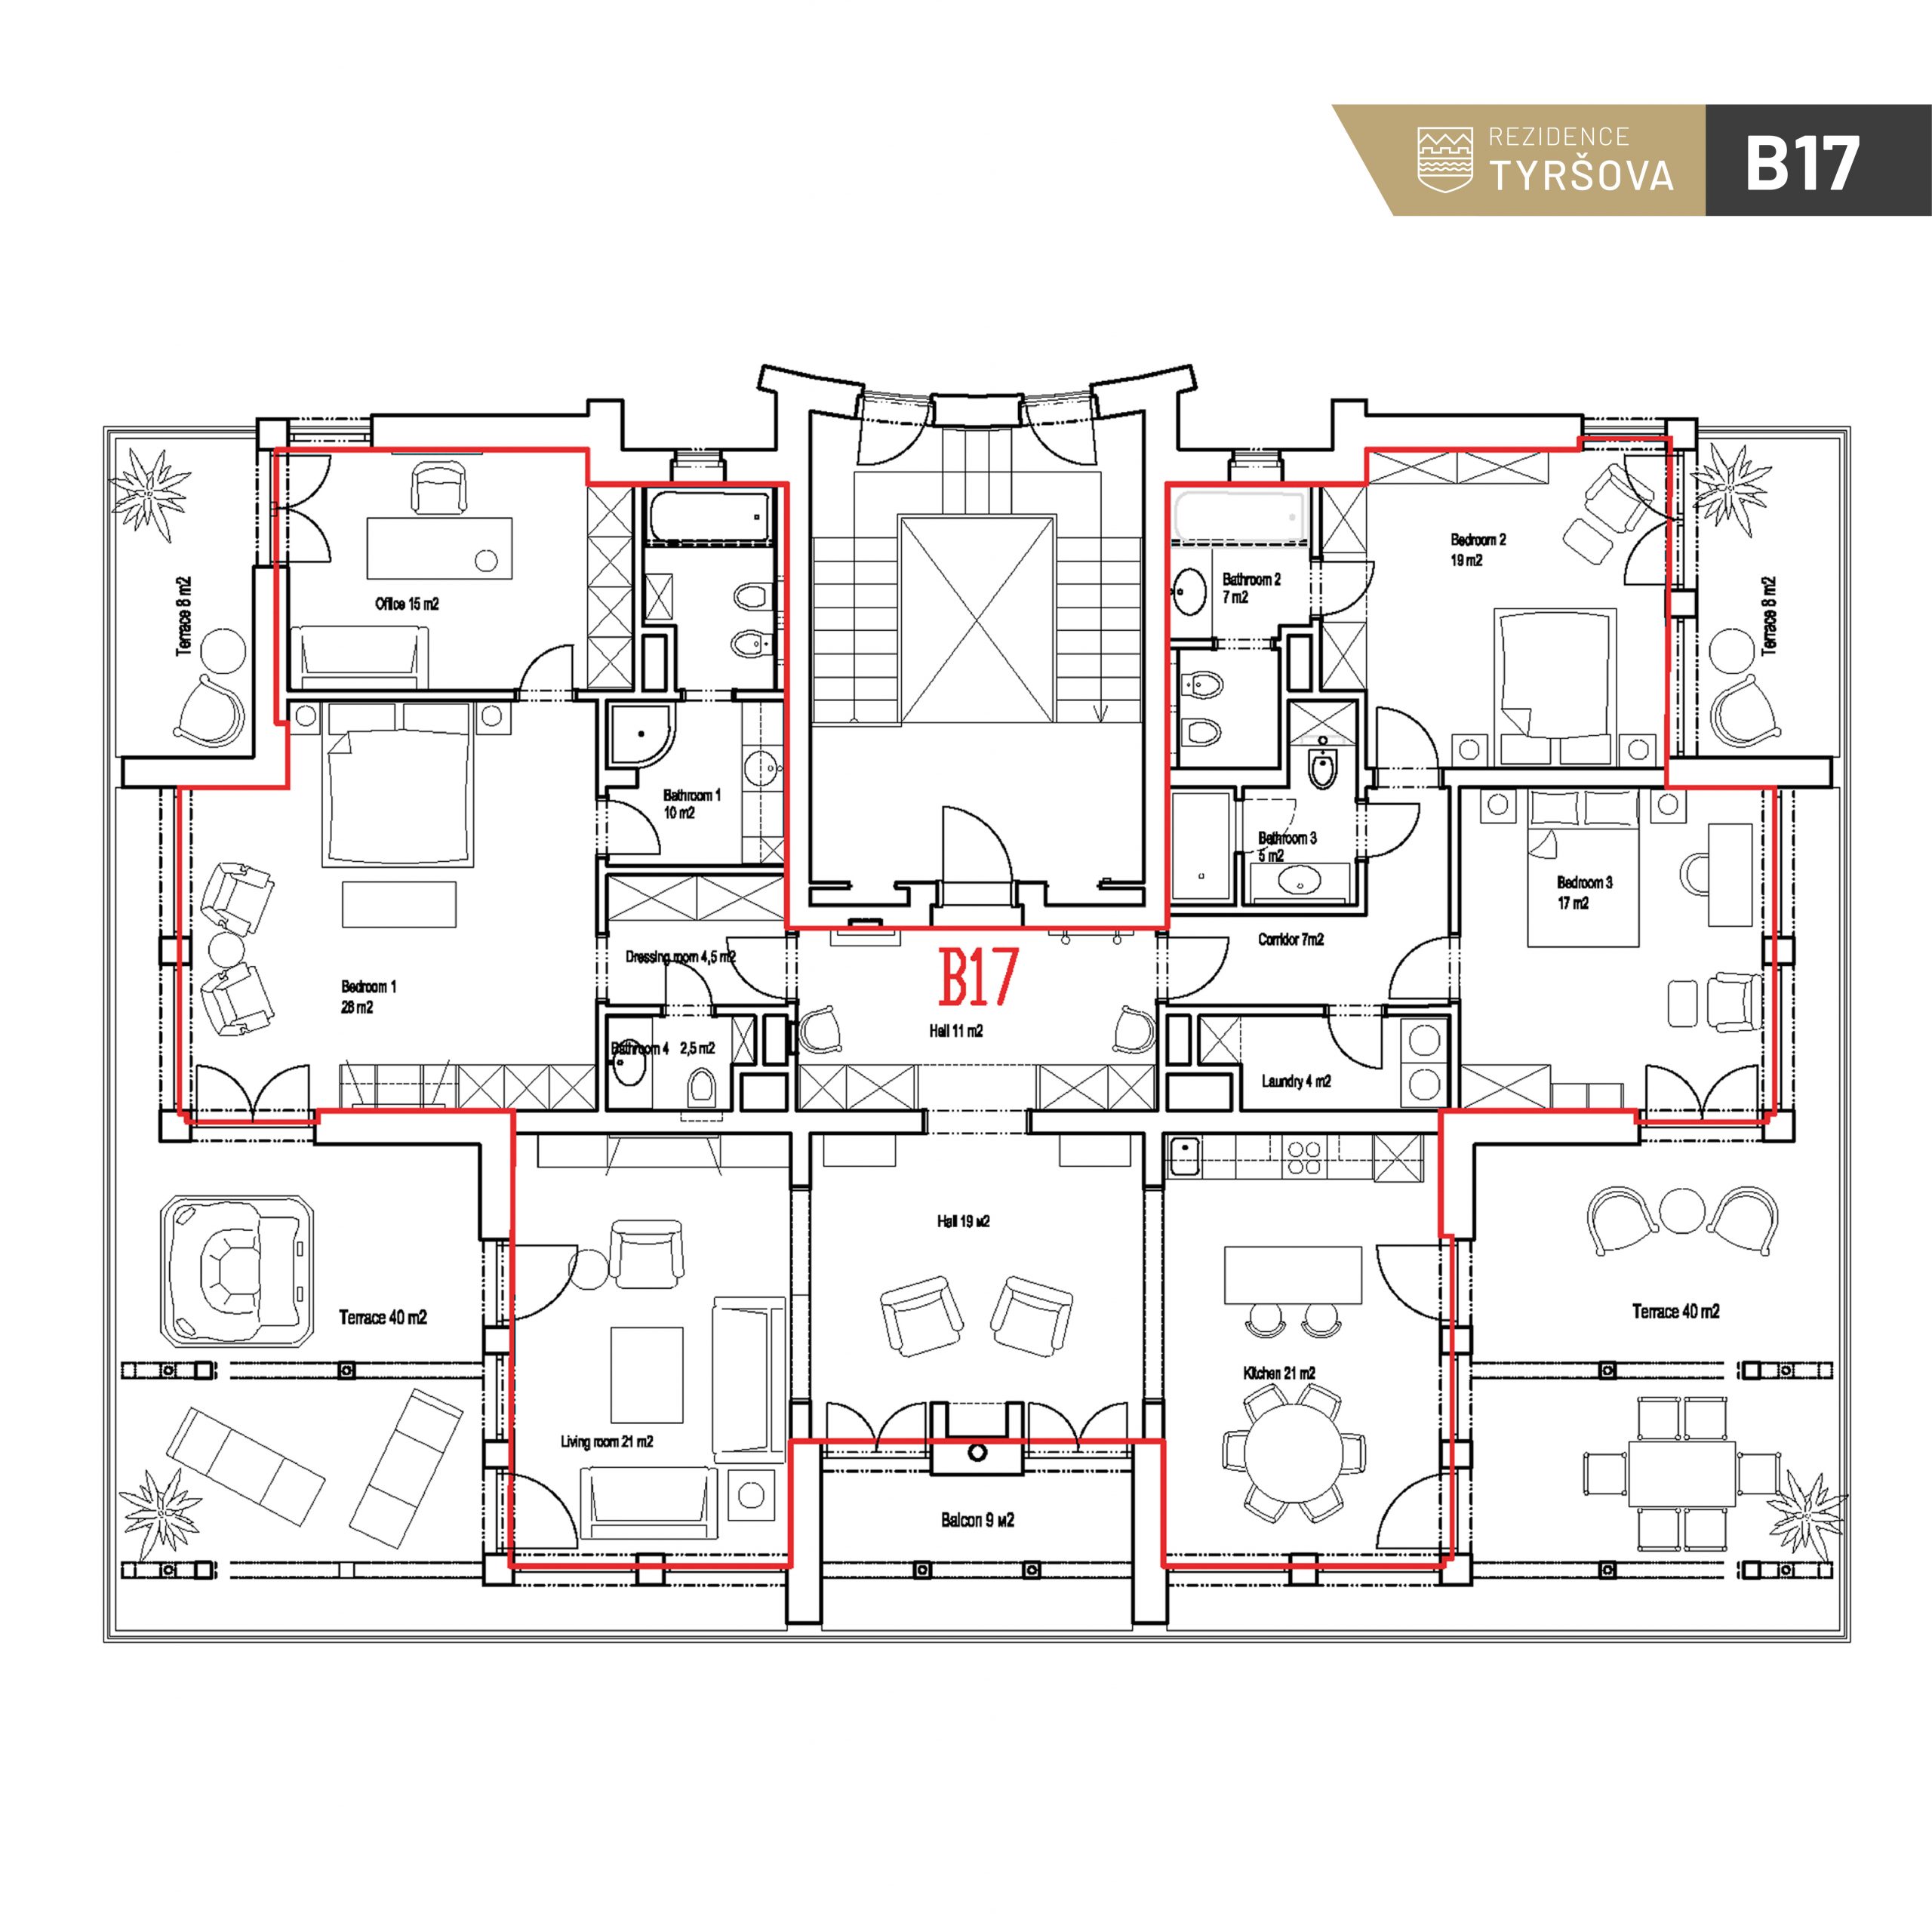 karta bytu | Rezidence Tyrsova | B17